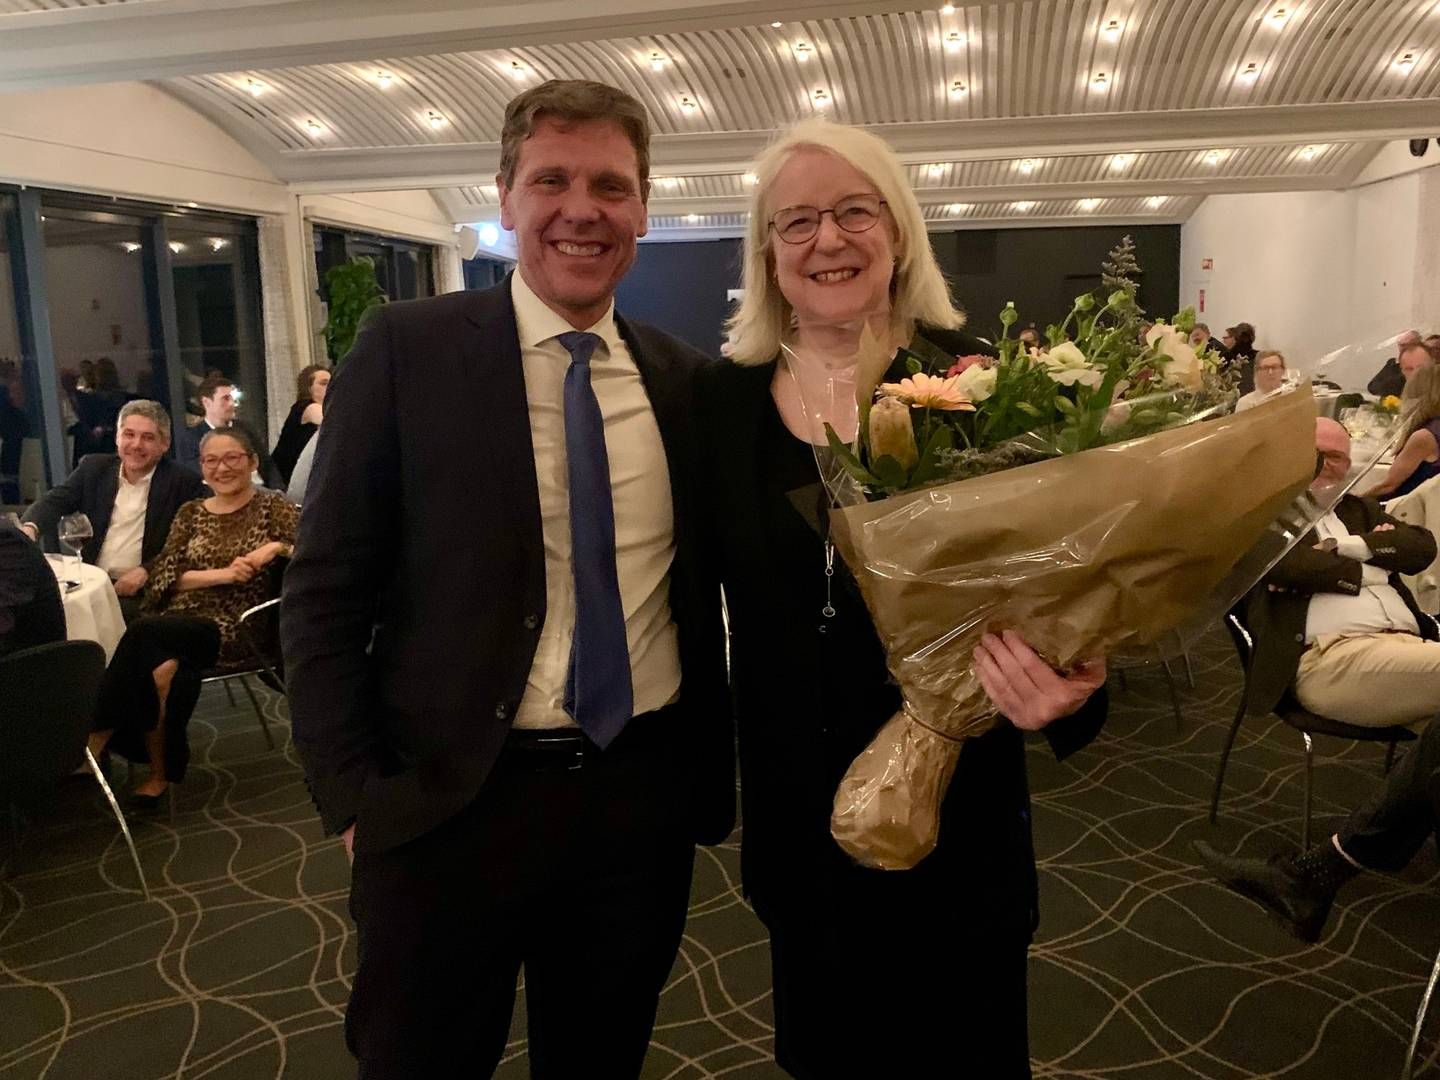 Formanden for Advokatrådet, Martin Lavesen, overrakte torsdag aften hædersprisen til Anne Birgitte Gammeljord ved et arrangement på Hotel Koldingfjord.